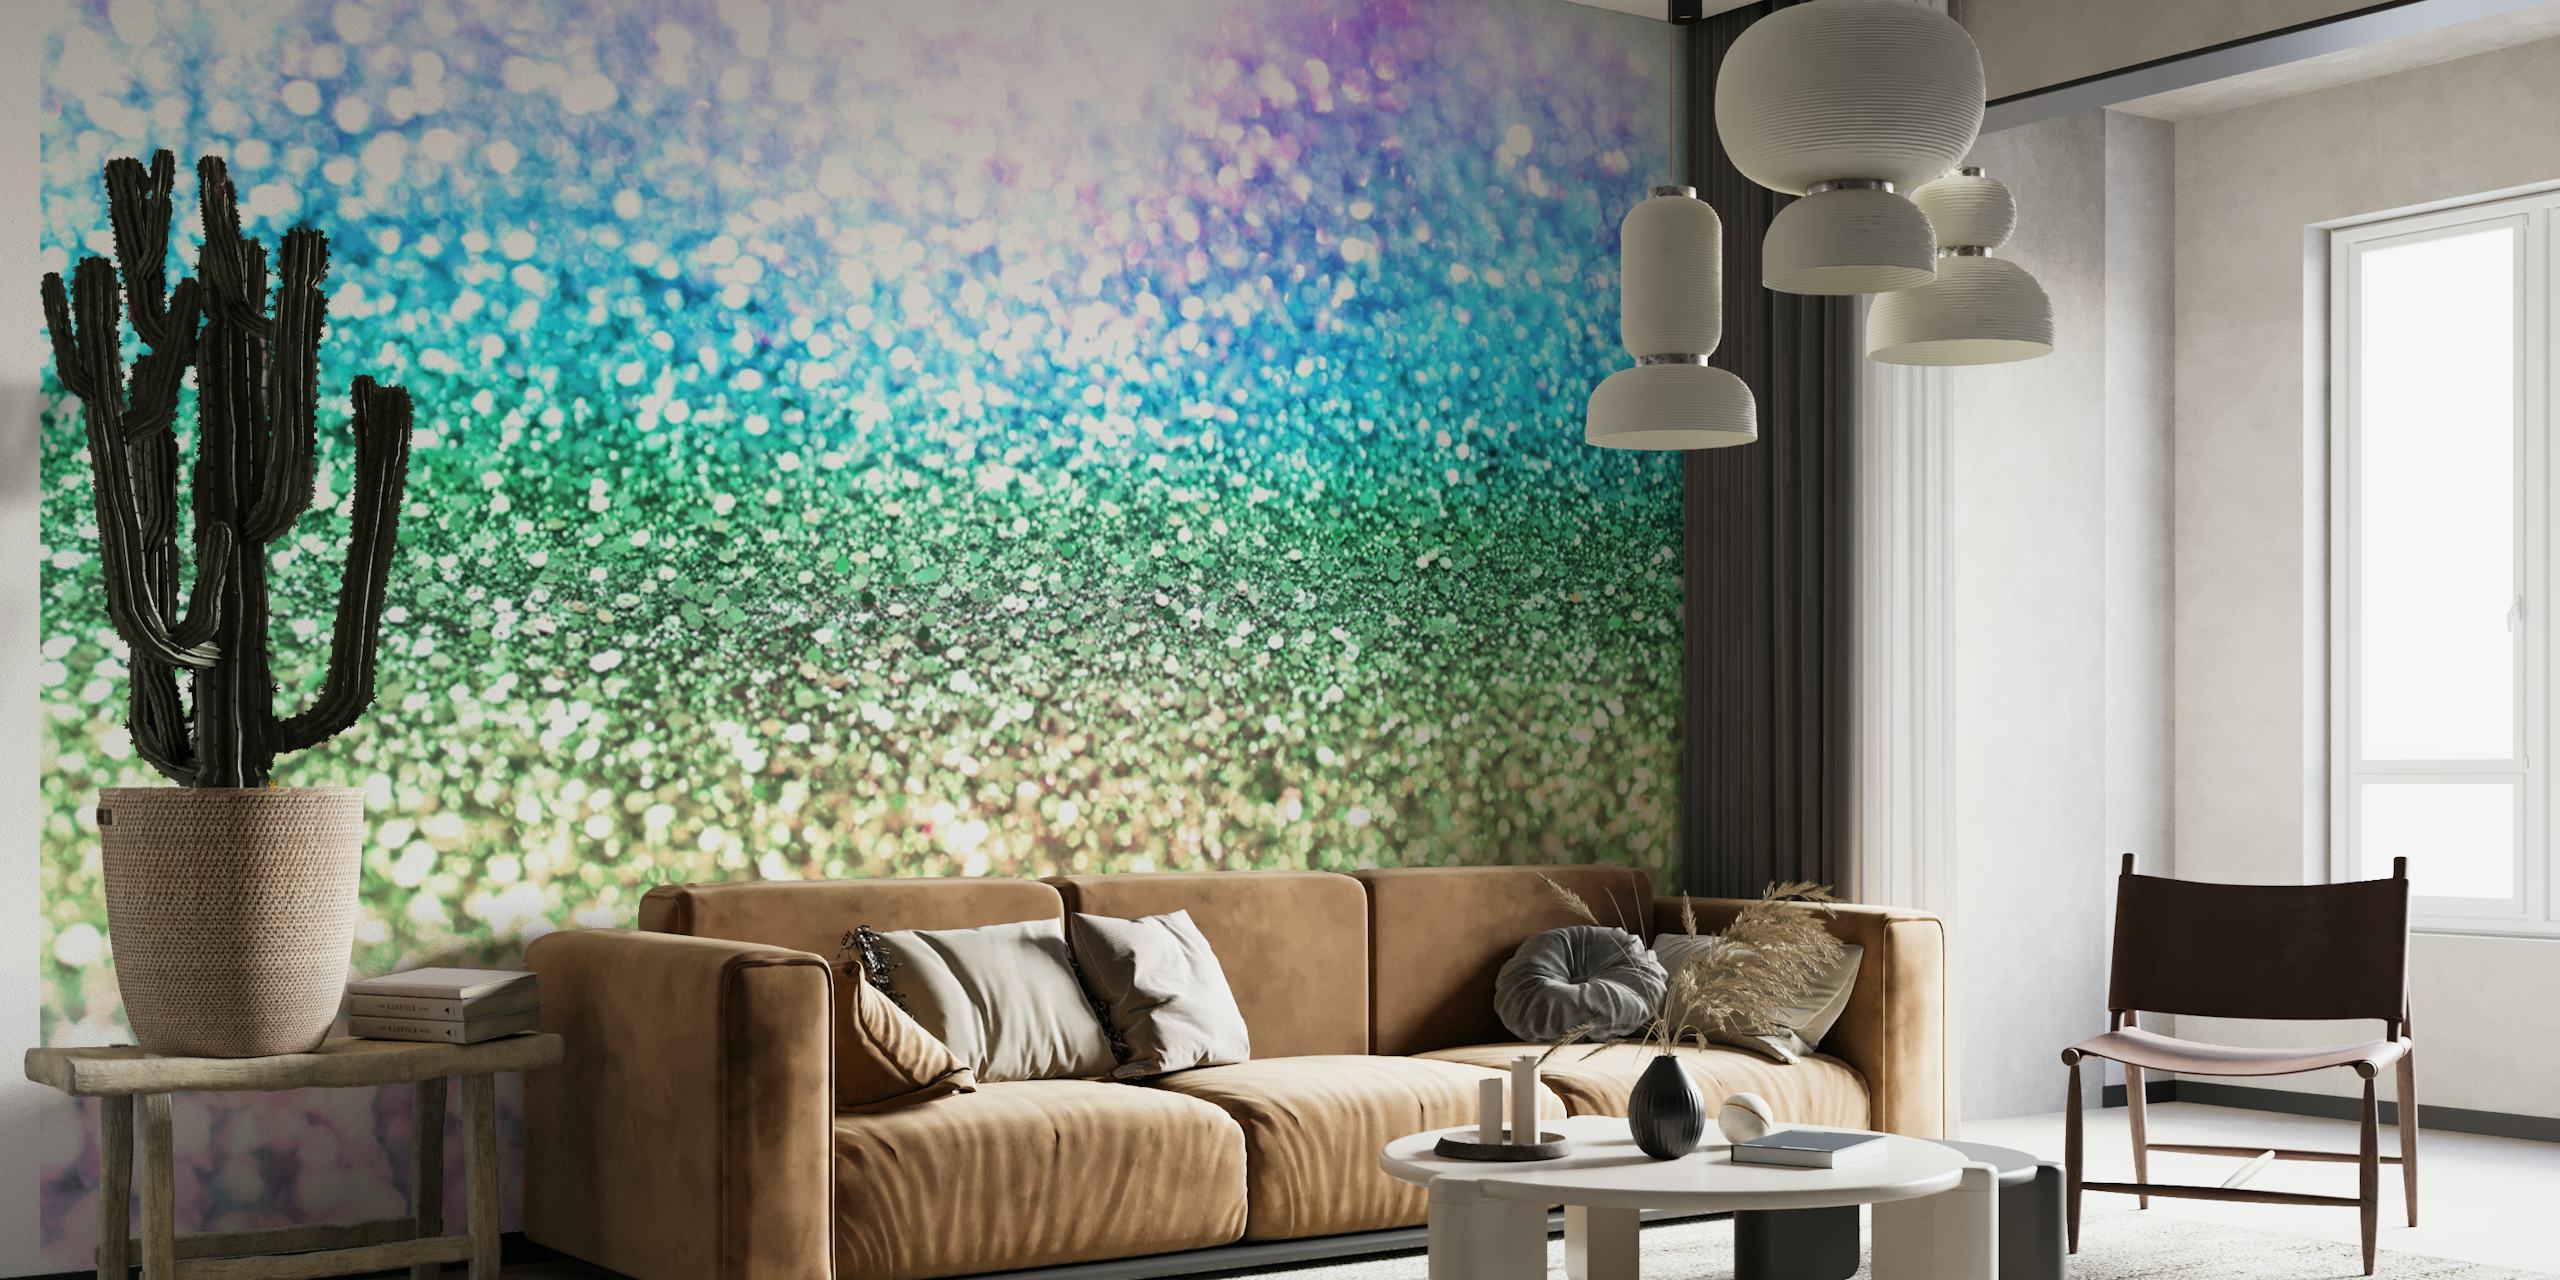 Pastellregnbueglitter veggmaleri med en glitrende tekstur, ideell for livlige og lunefulle dekortemaer